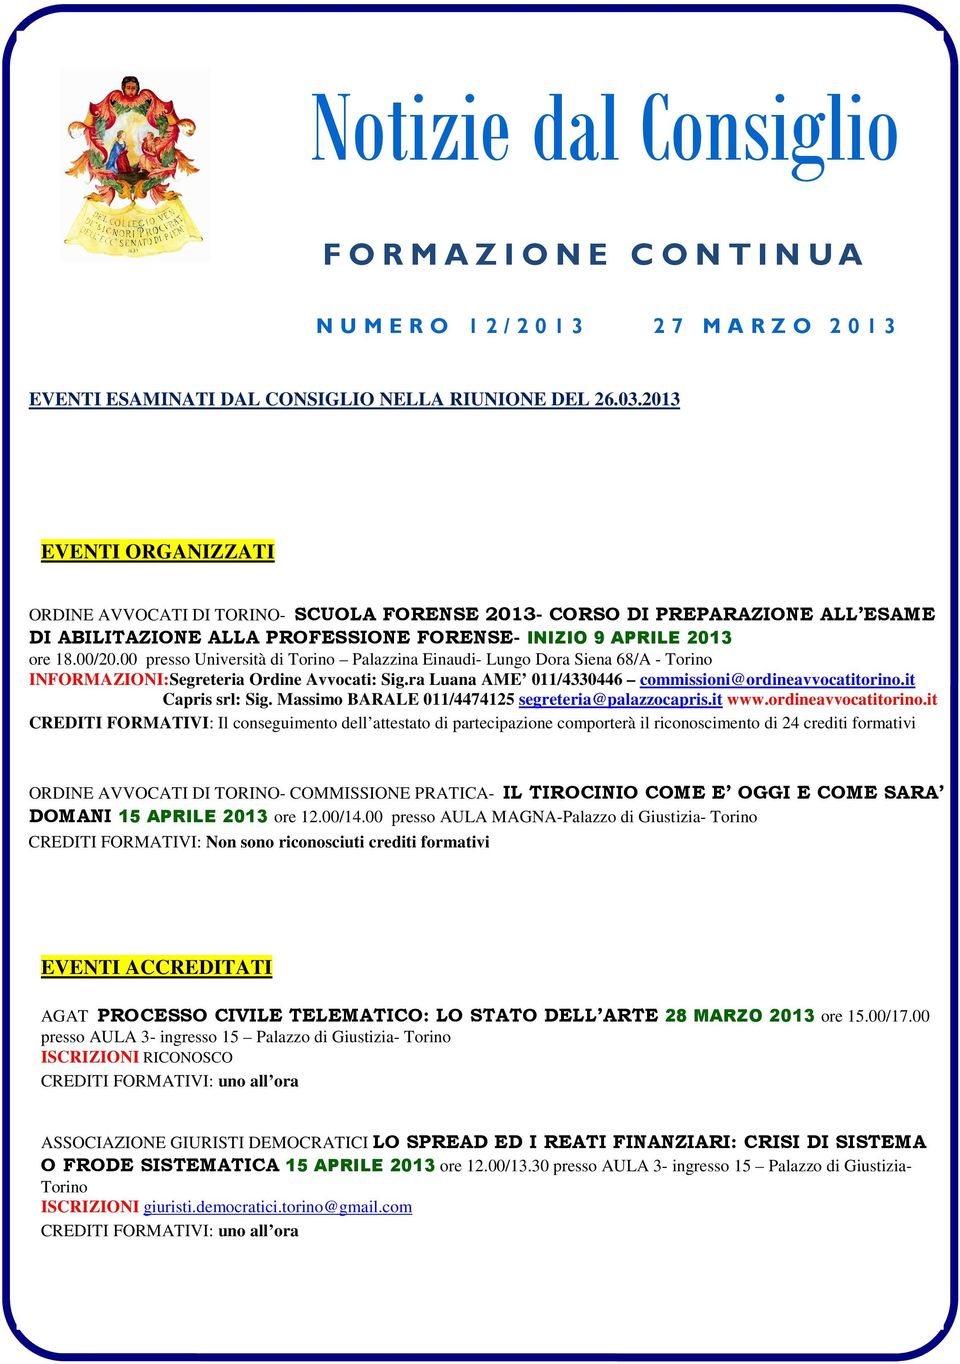 00 presso Università di Torino Palazzina Einaudi- Lungo Dora Siena 68/A - Torino INFORMAZIONI:Segreteria Ordine Avvocati: Sig.ra Luana AME 011/4330446 commissioni@ordineavvocatitorino.